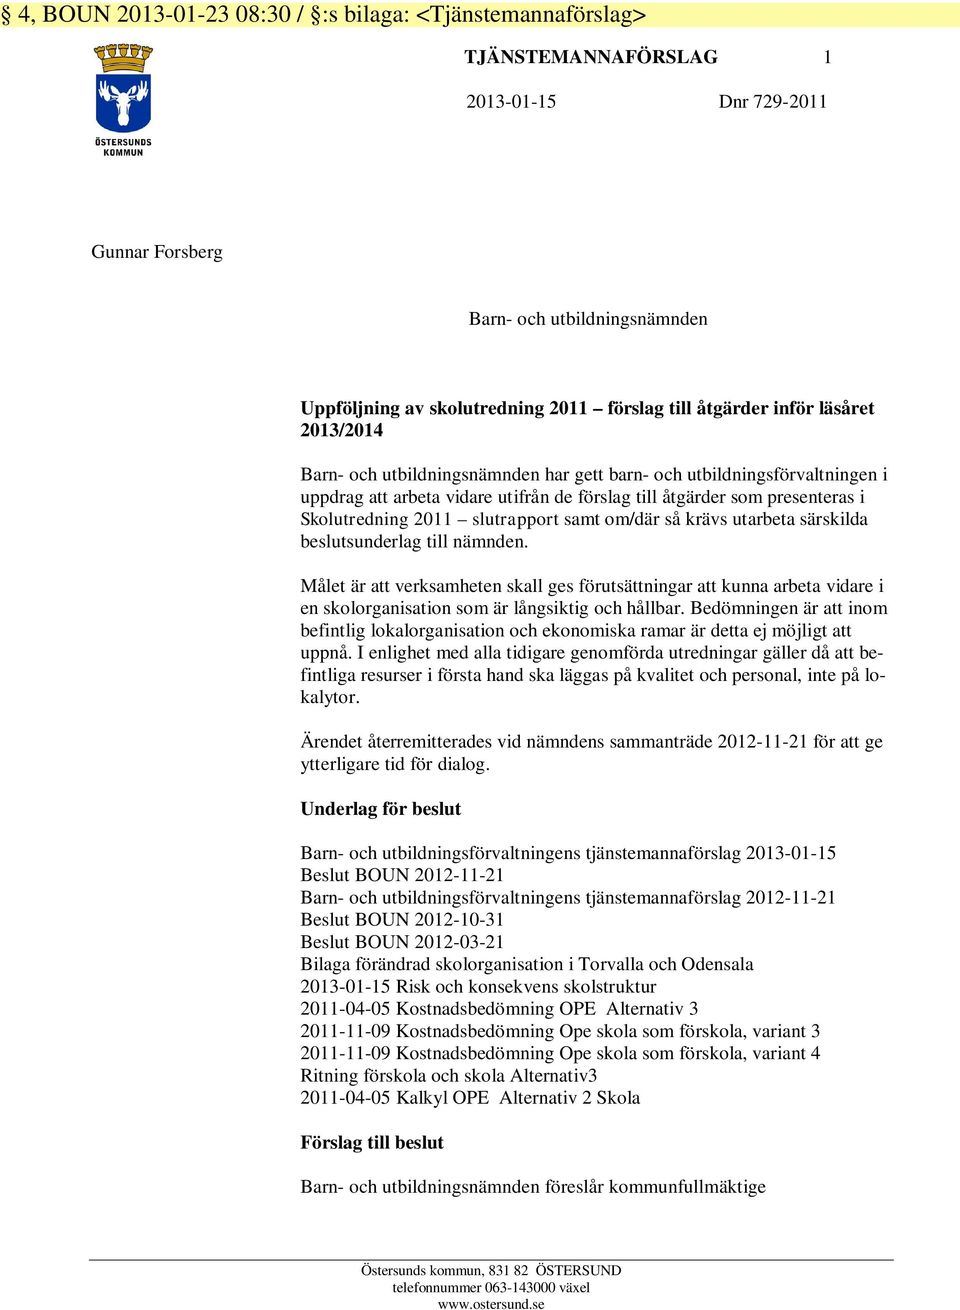 2011 slutrapport samt om/där så krävs utarbeta särskilda beslutsunderlag till nämnden.